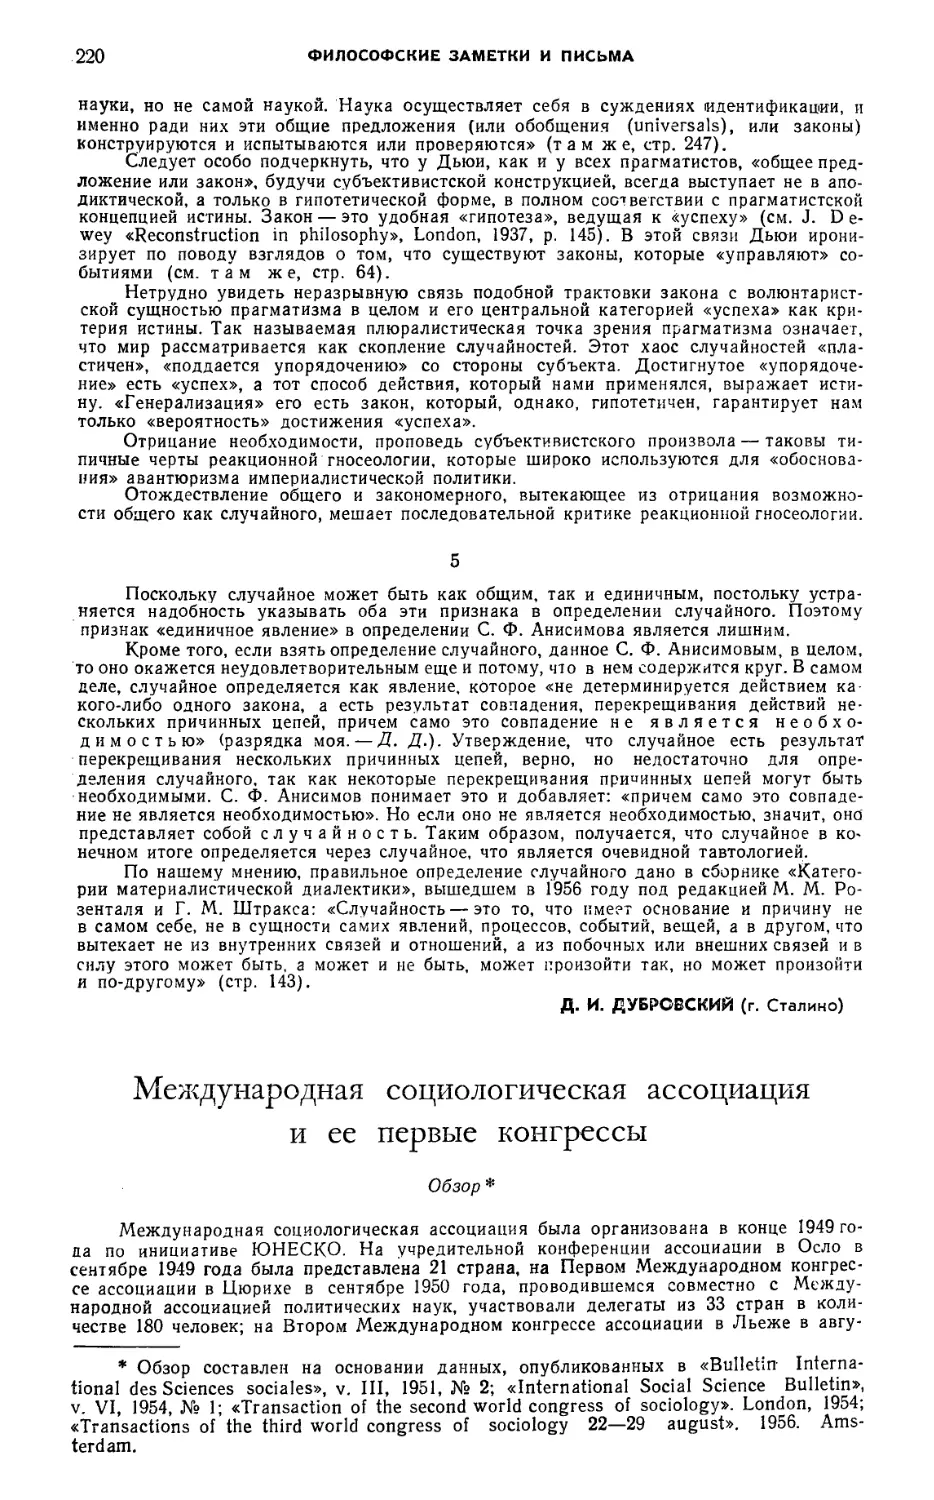 Е. Д. Модржинская — Международная социологическая ассоциация и ее первые конгрессы